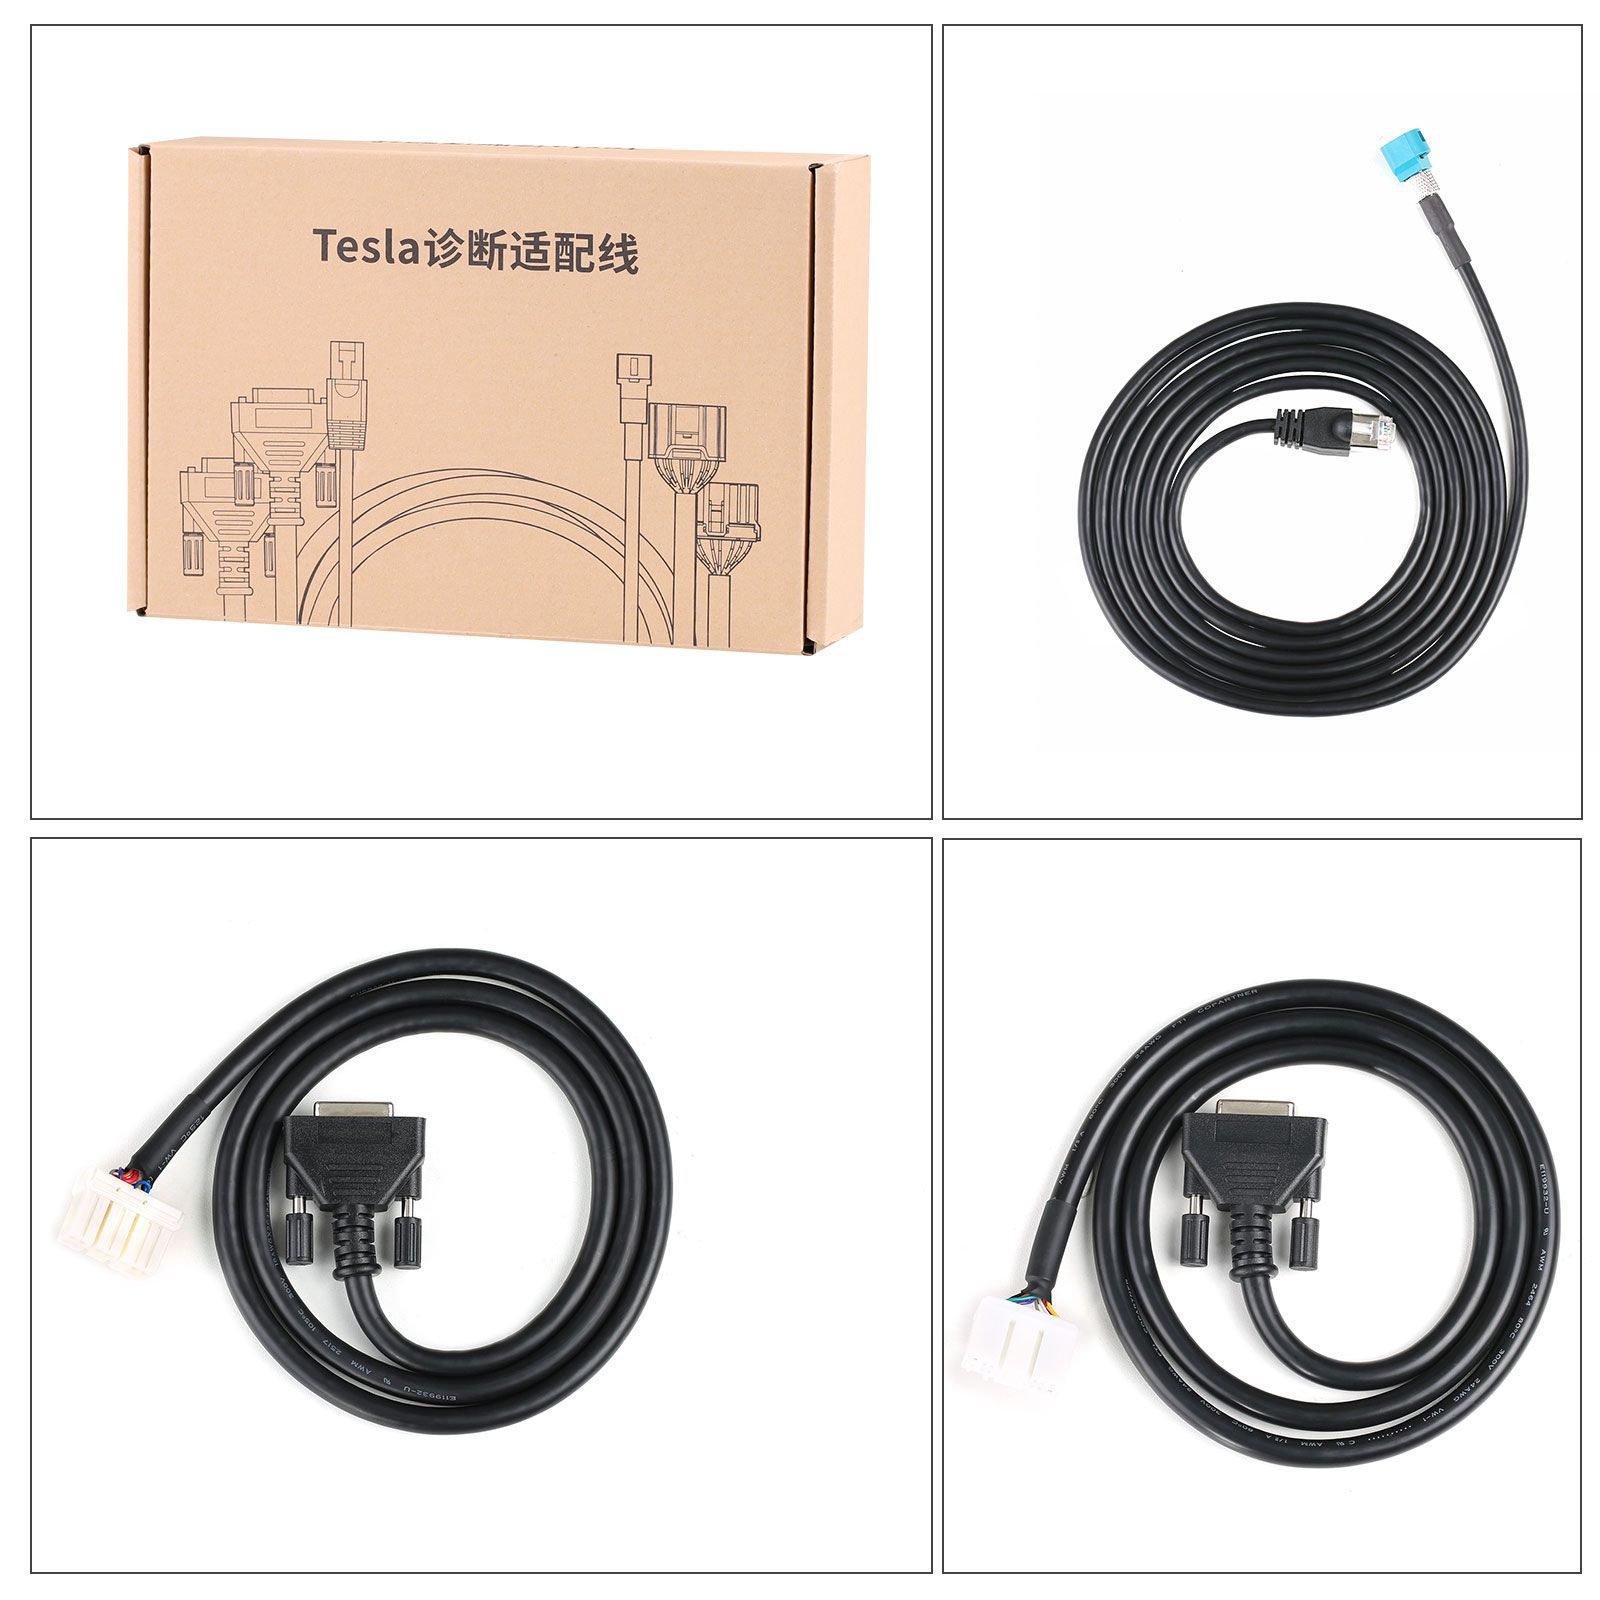 Câble d'adaptateur de diagnostic autel Tesla original pour les modèles Tesla s et X en conjonction avec la tablette maxisys ultra / ms909 / ms919